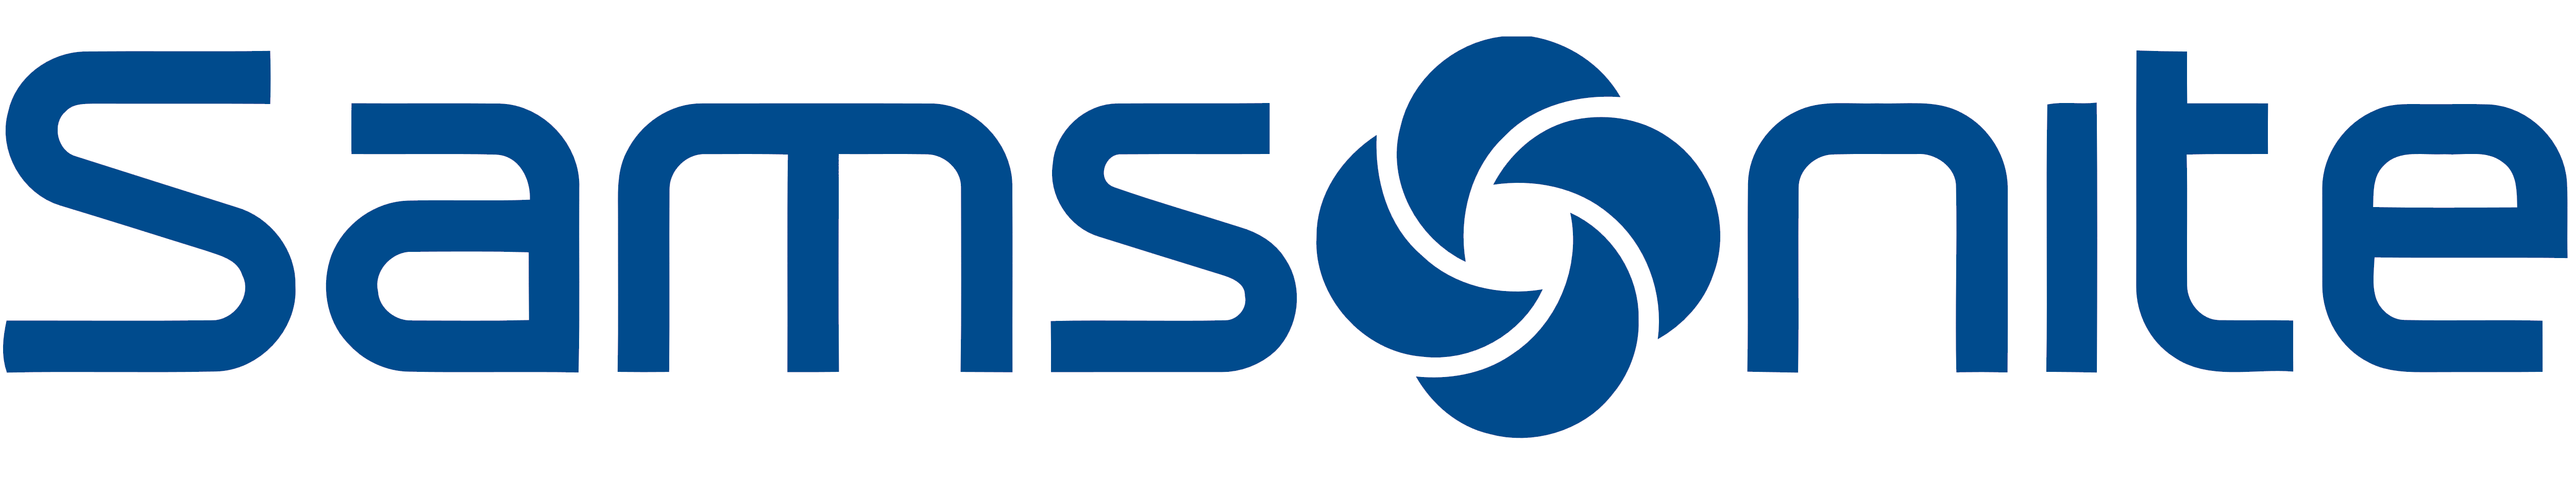 Samsonite Logo - Samsonite – Logos Download